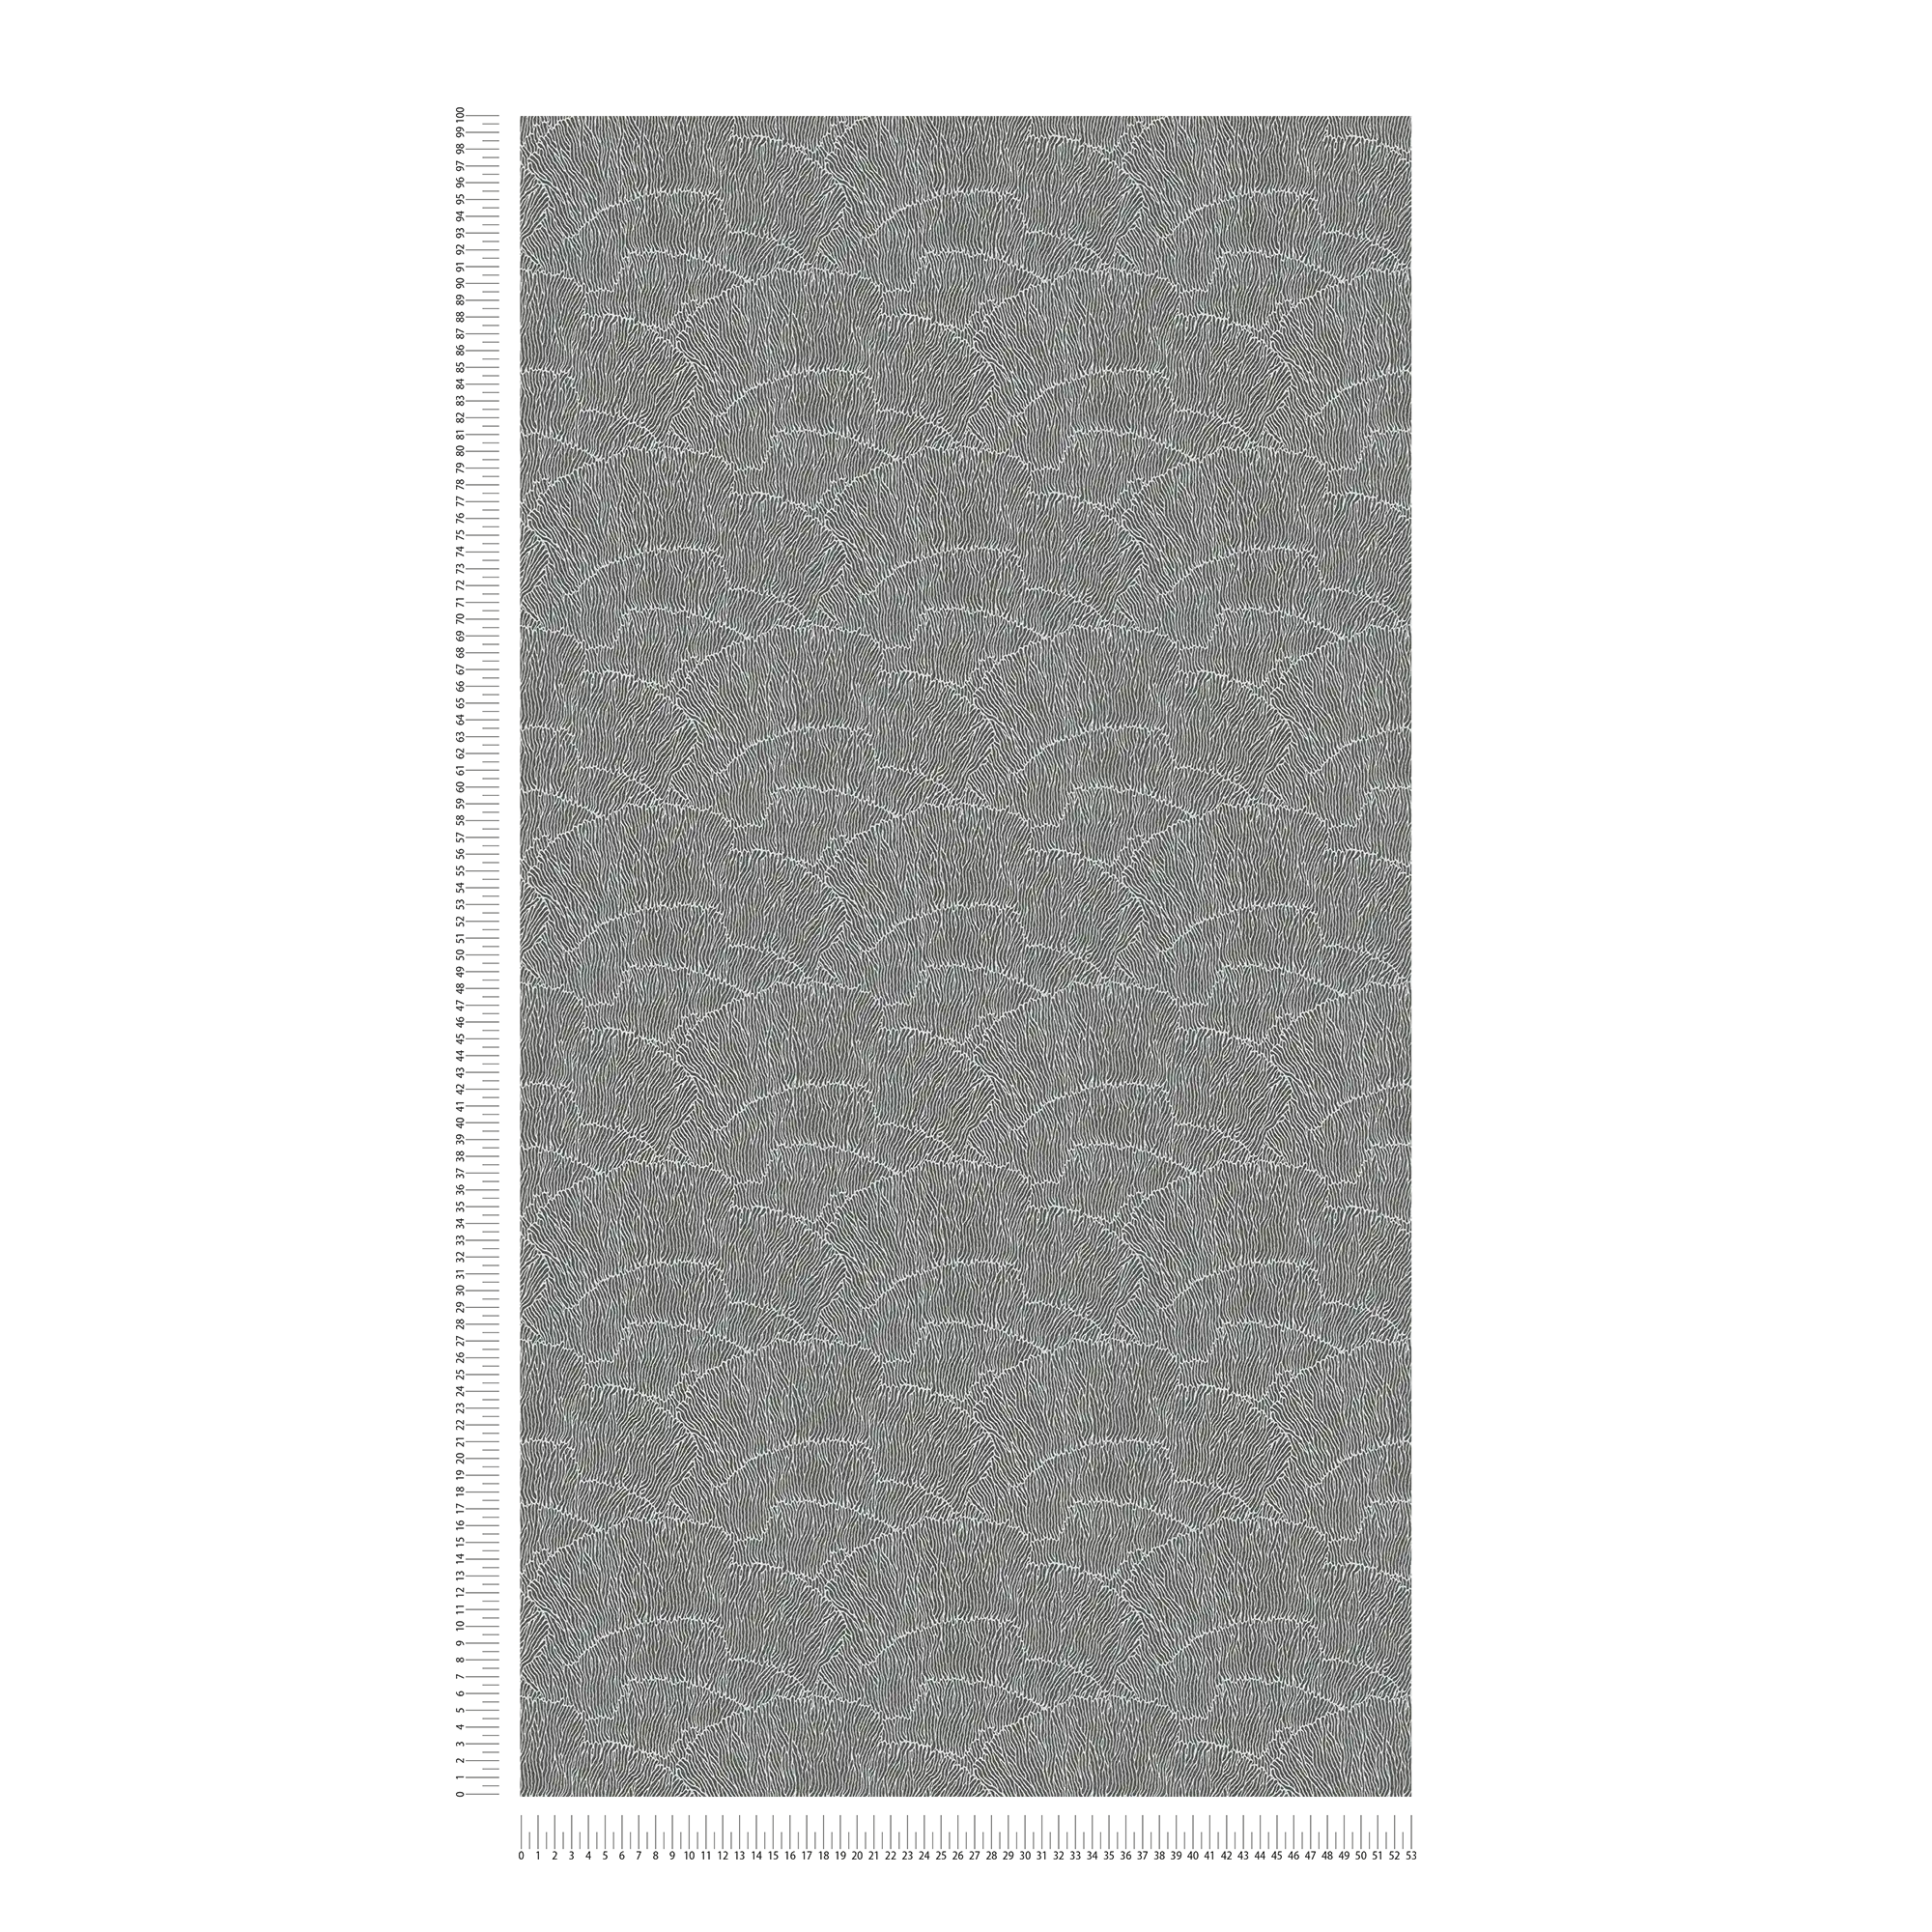             Abstract Onderlaag behang Met Lijnpatroon - Zilver, Zwart, Metaal
        